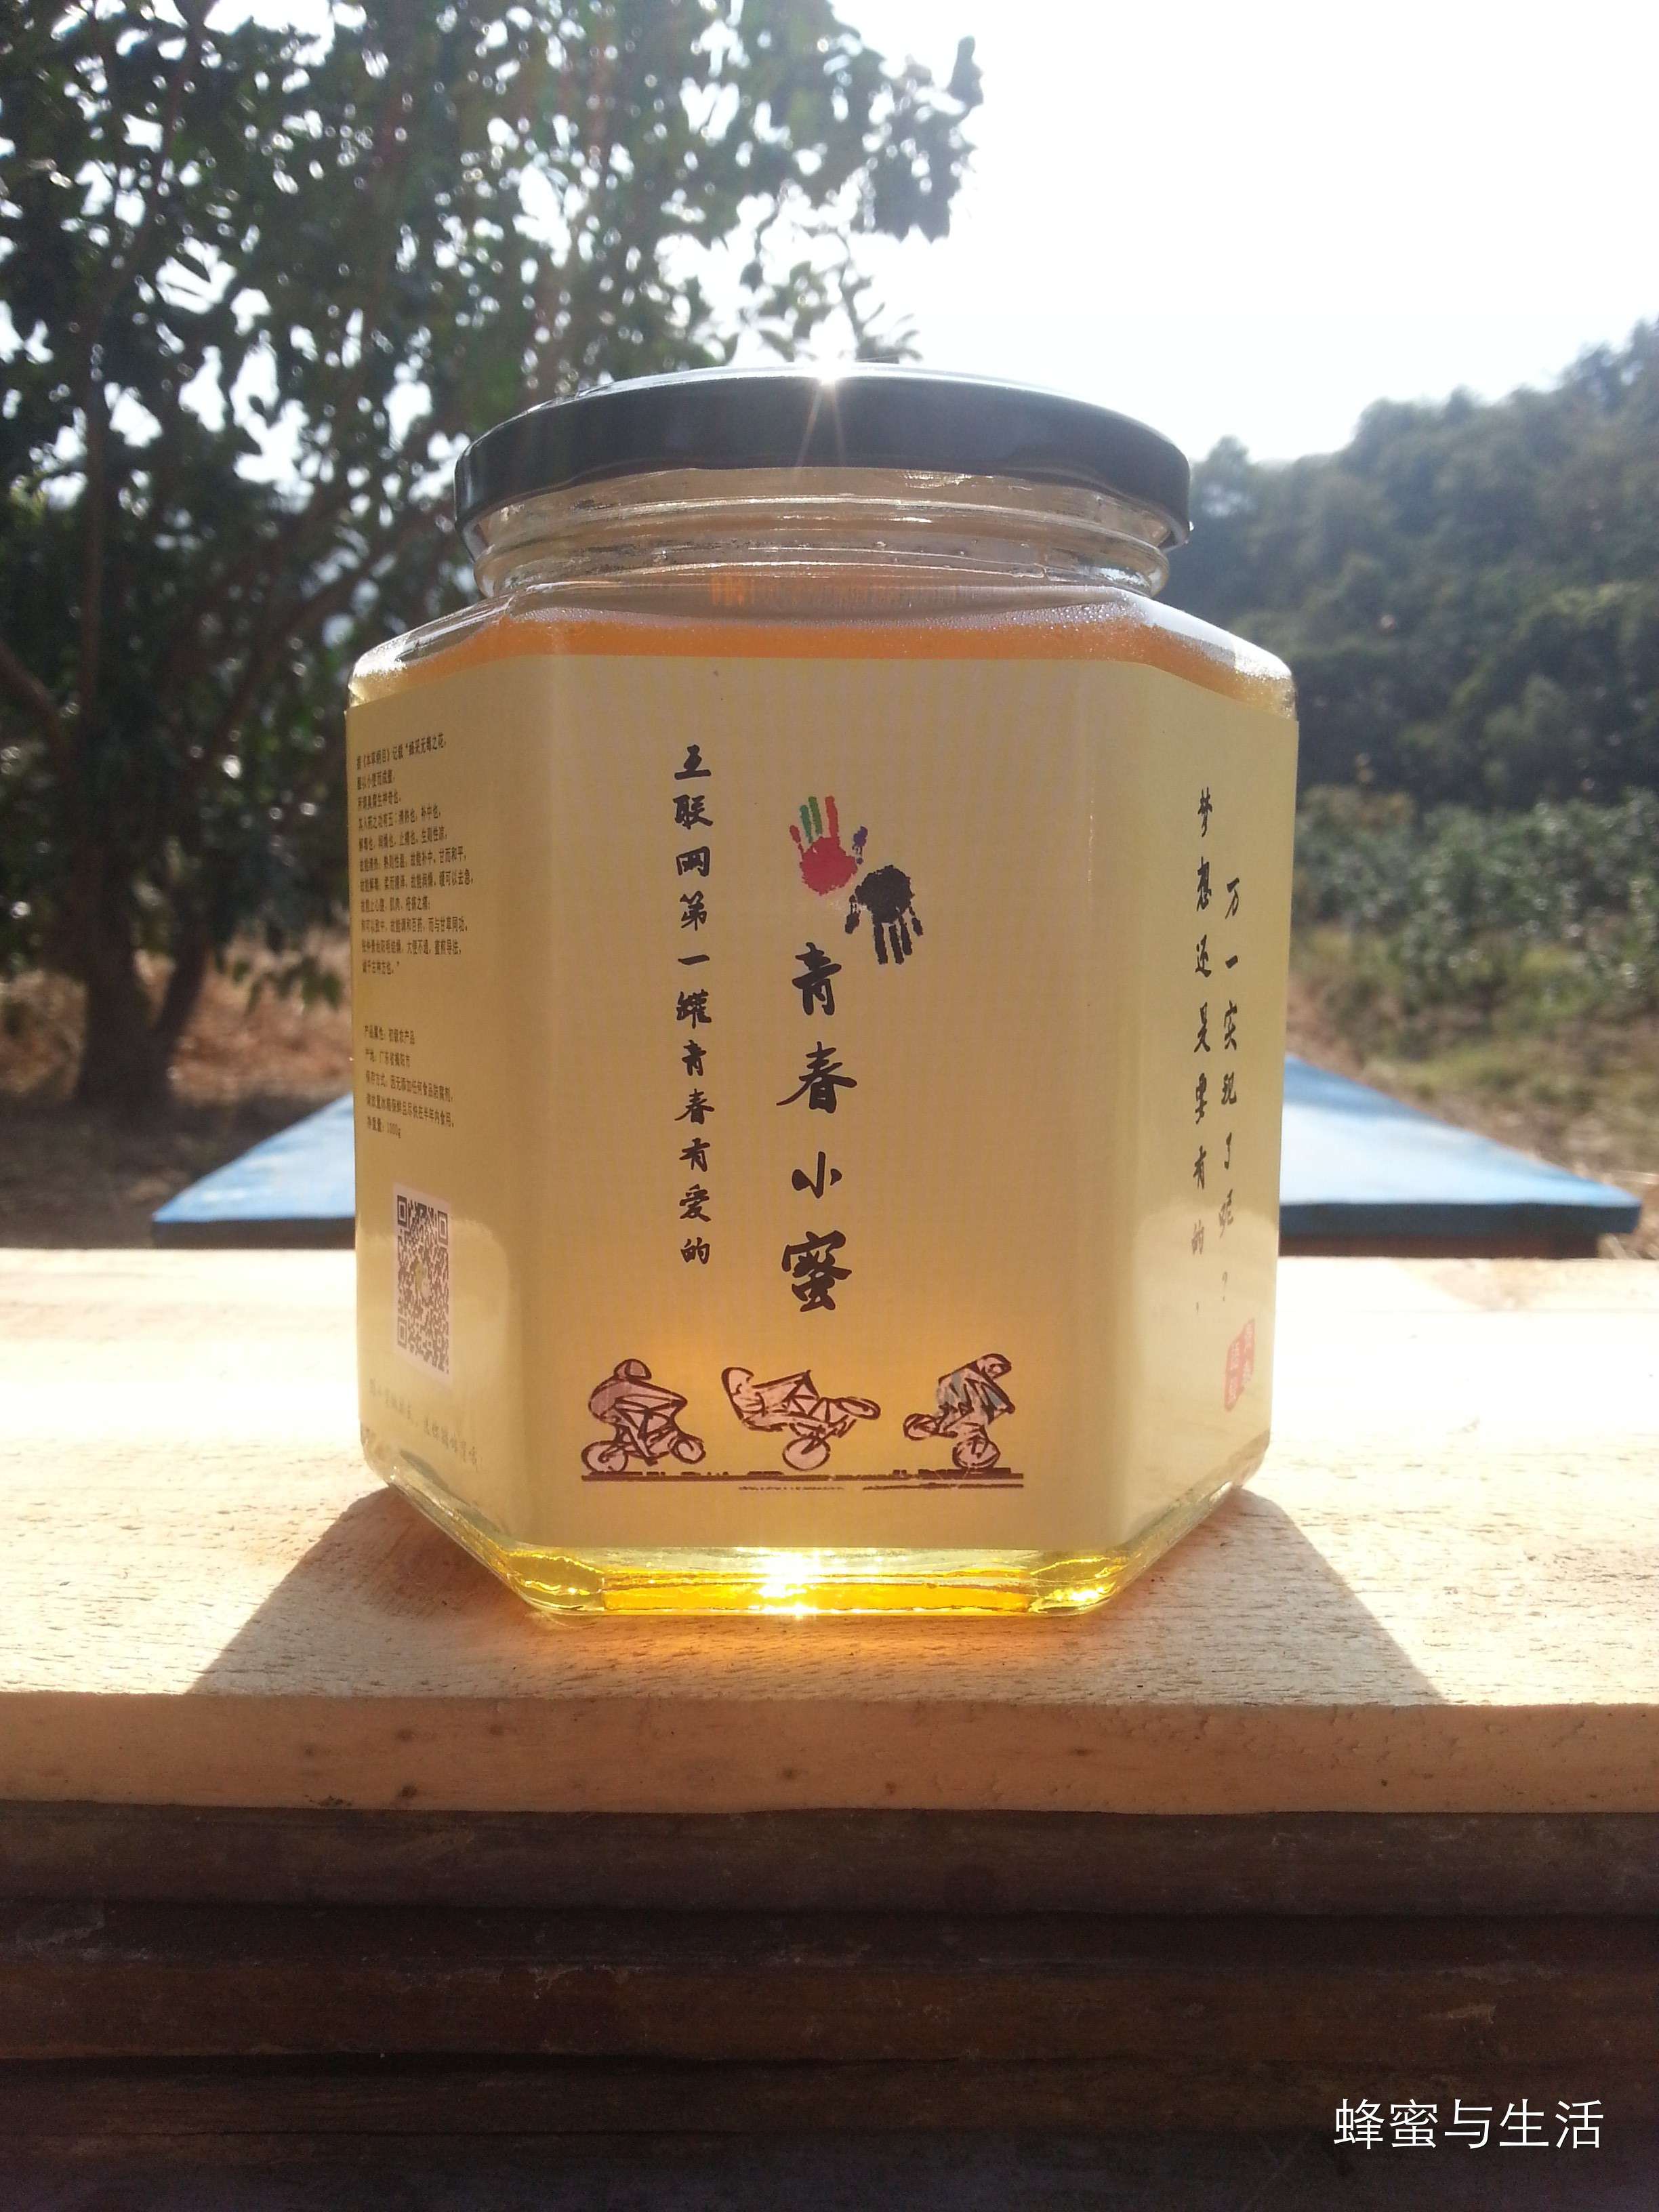 蜂蜜包装盒 真蜂蜜的价格 蜂蜜去痘 痛风蜂蜜 蜂蜜批发价格